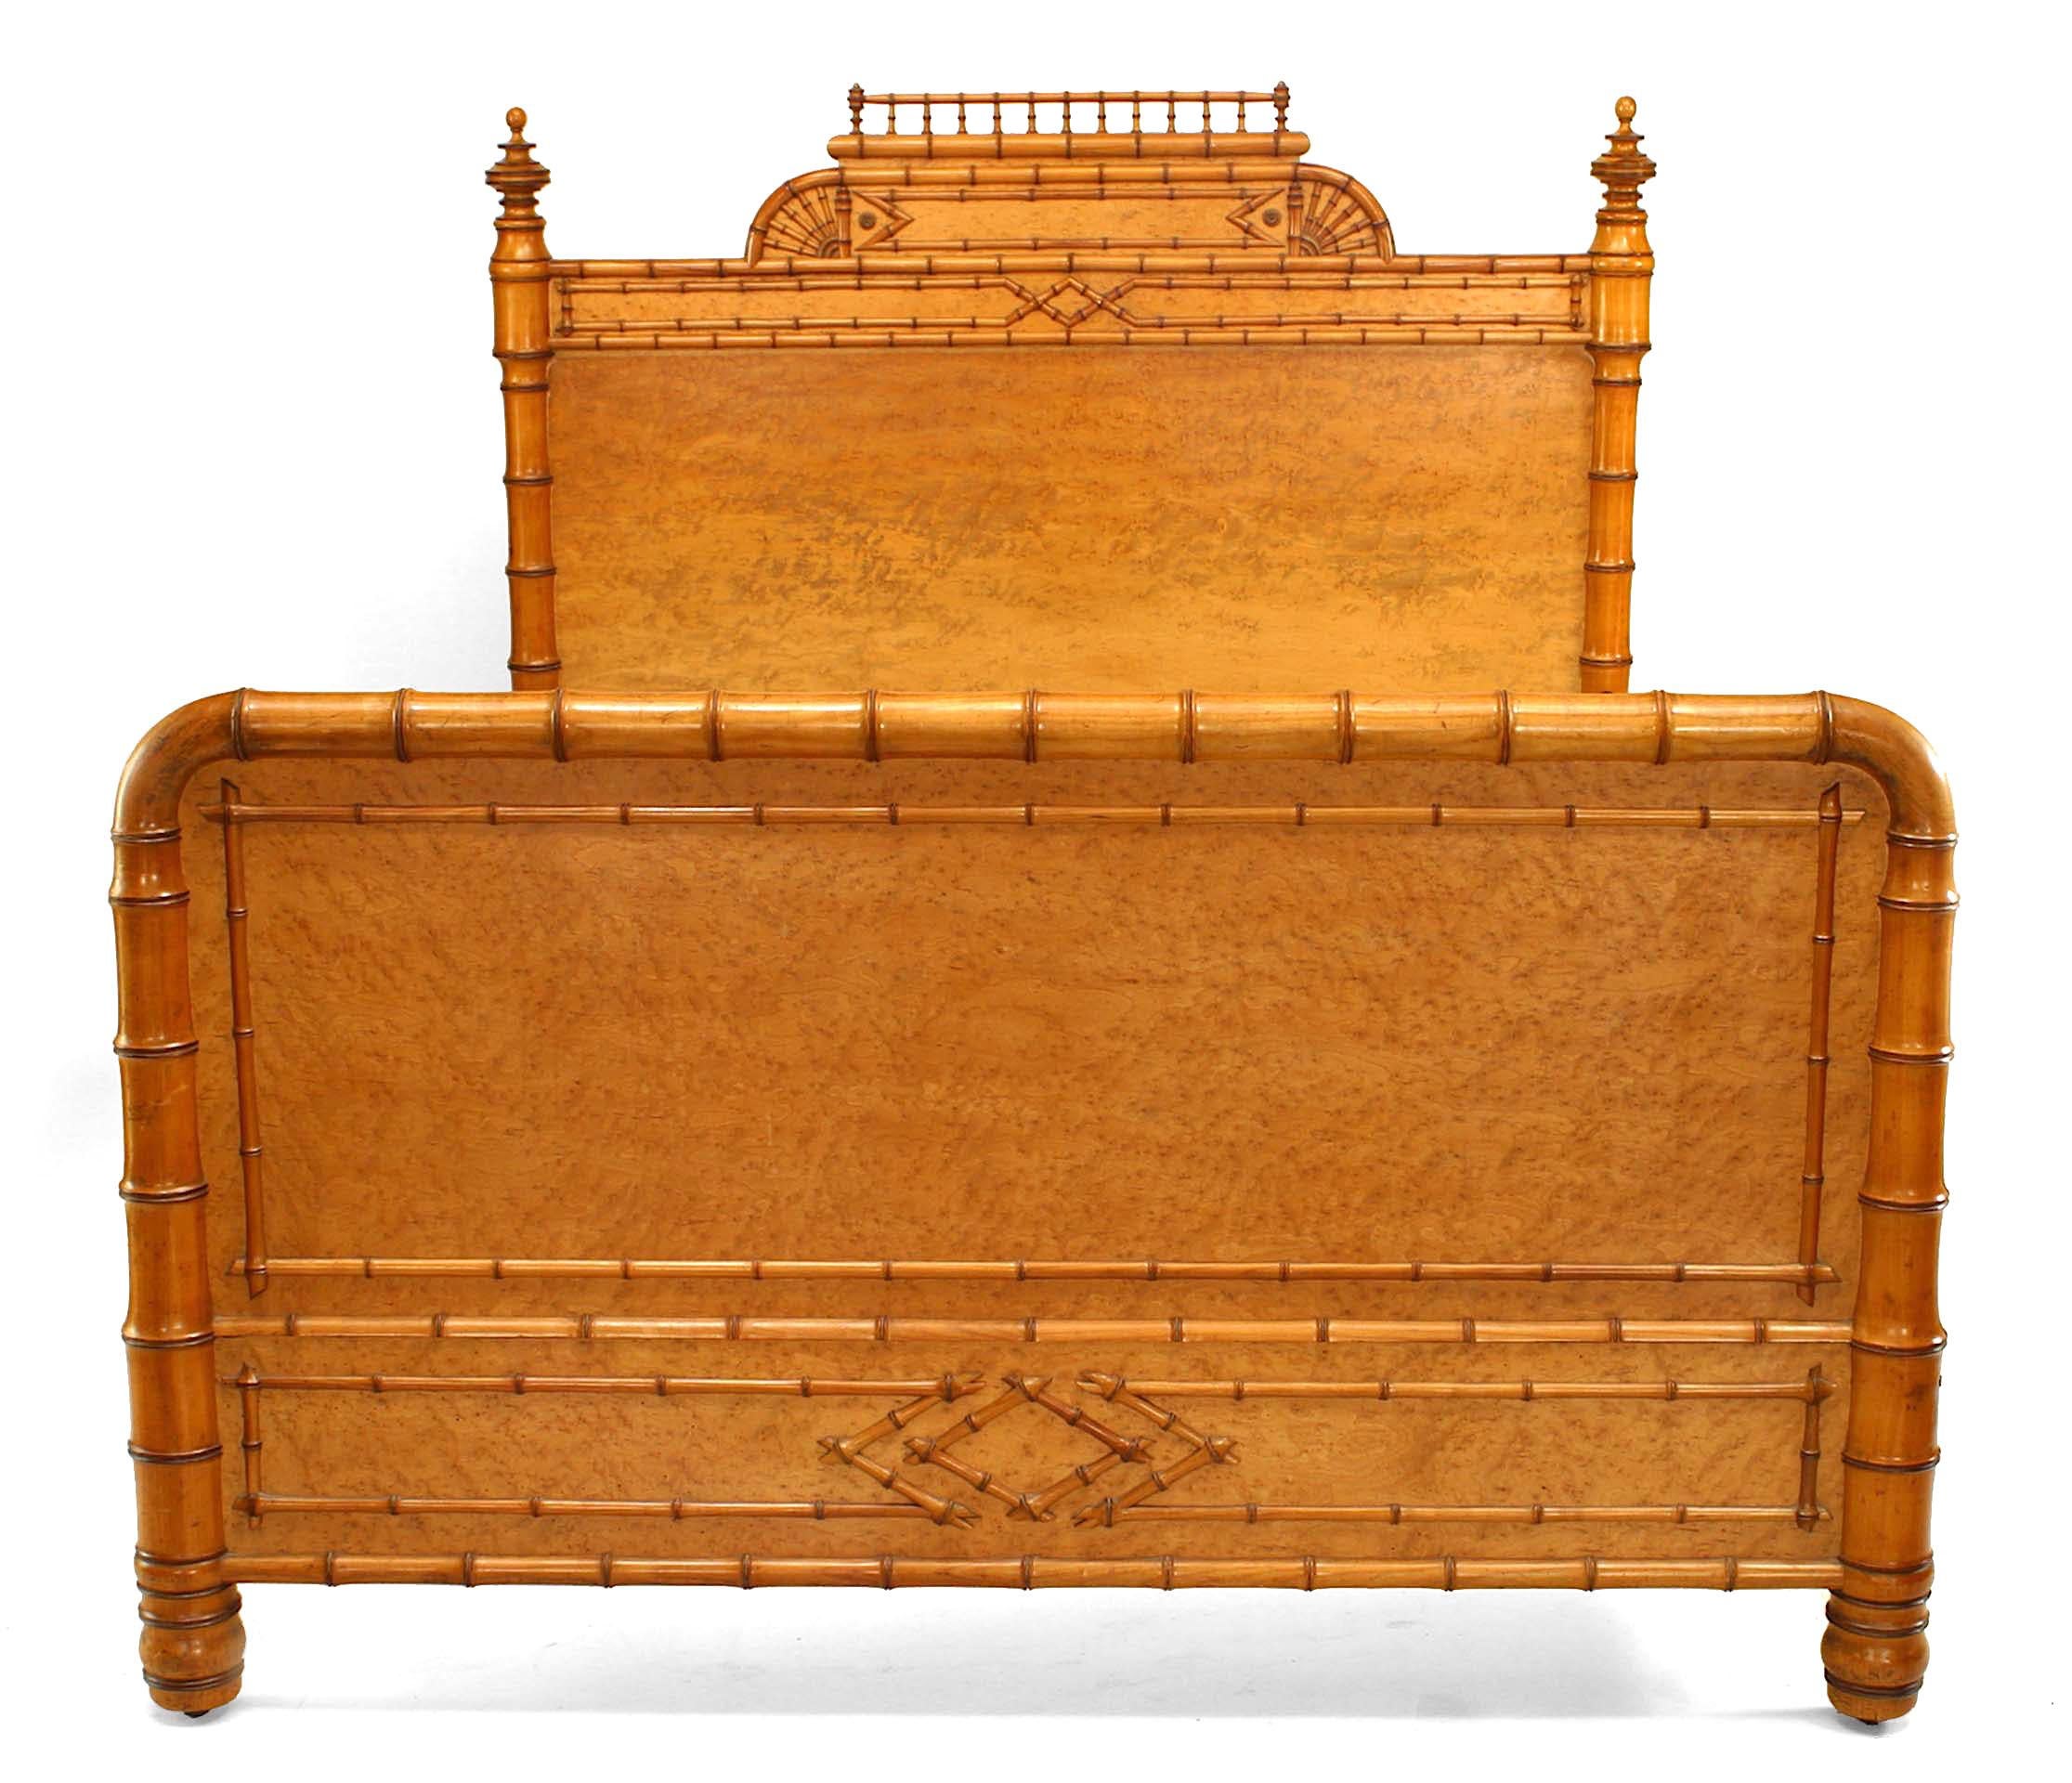 Amerikanisches viktorianisches Bett in voller Größe aus Vogelaugenahorn mit seitlichen Endstücken und filigranem Giebel am Kopfteil (einschließlich: Kopfteil, Fußteil und Geländer)
